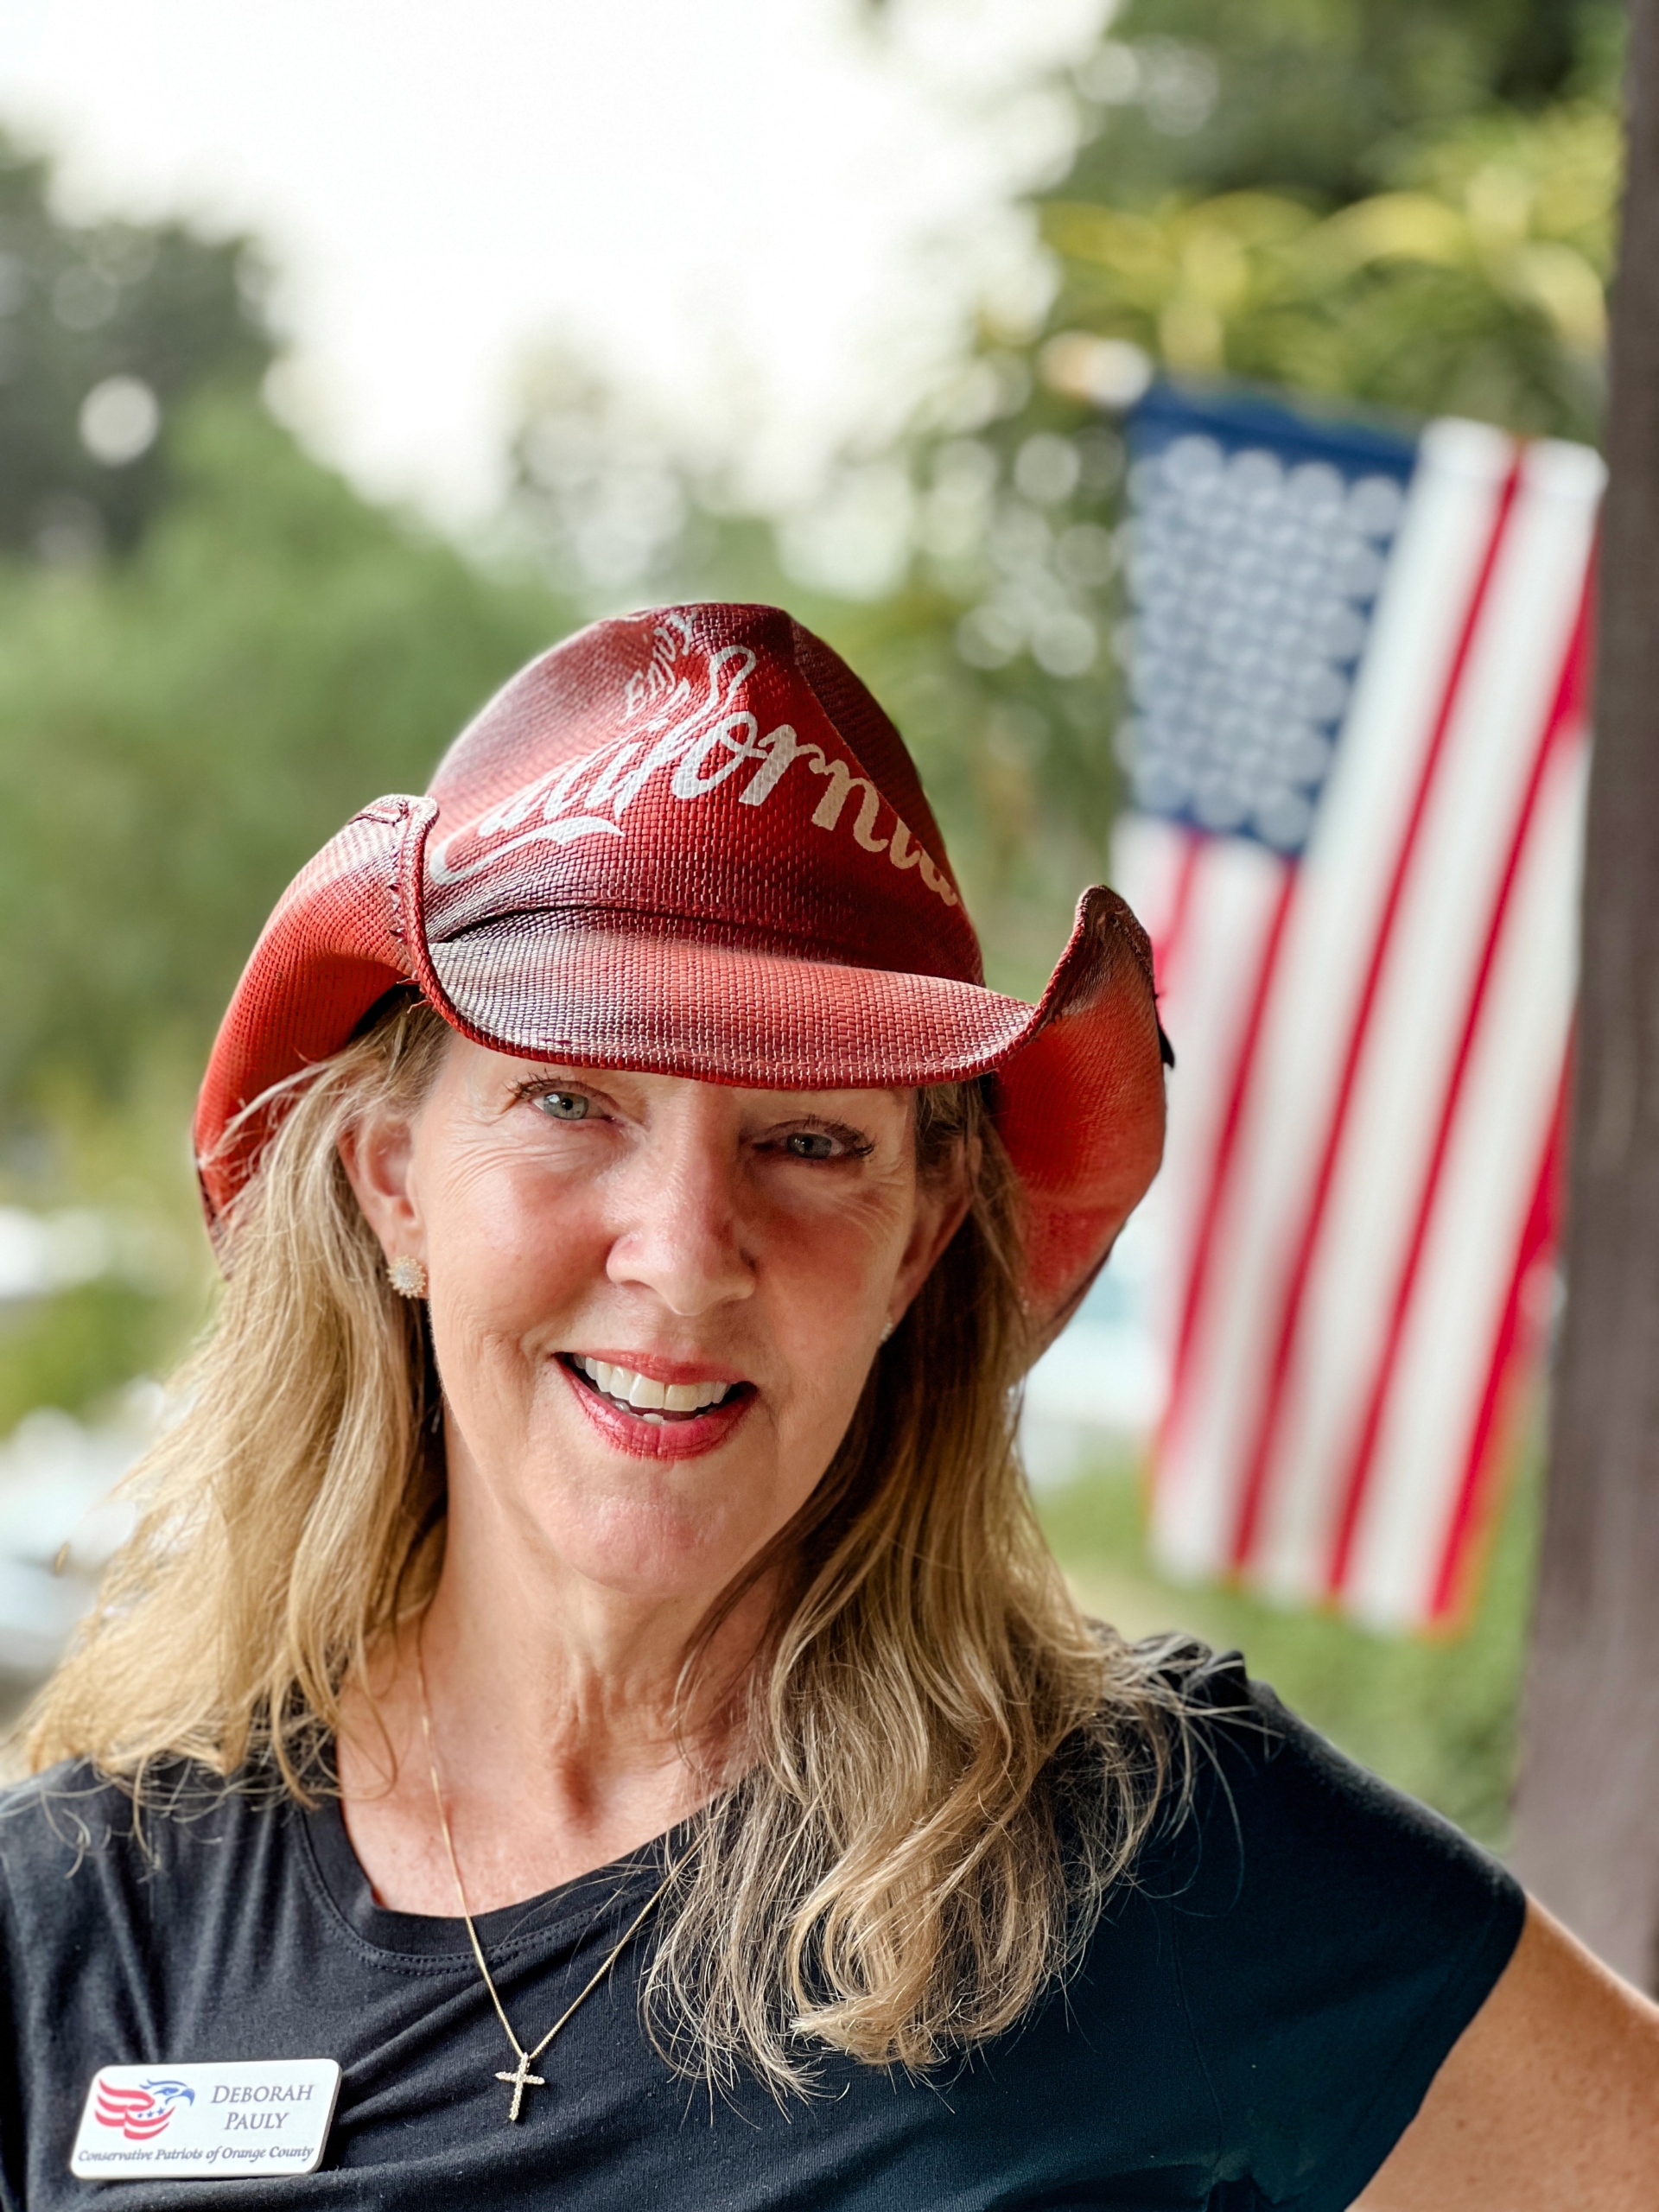 Bà Deborah Pauly, chủ tịch Tổ chức Những người Yêu nước Bảo tồn Truyền thống của Quận Cam, tổ chức một sự kiện riêng dành cho những người ủng hộ ông John Eastman, cựu luật sư của ông Trump, tại một trang trại ở phía bắc Quận Cam, California, vào ngày 19/08/2023. (Ảnh: Brad Jones/The Epoch Times)